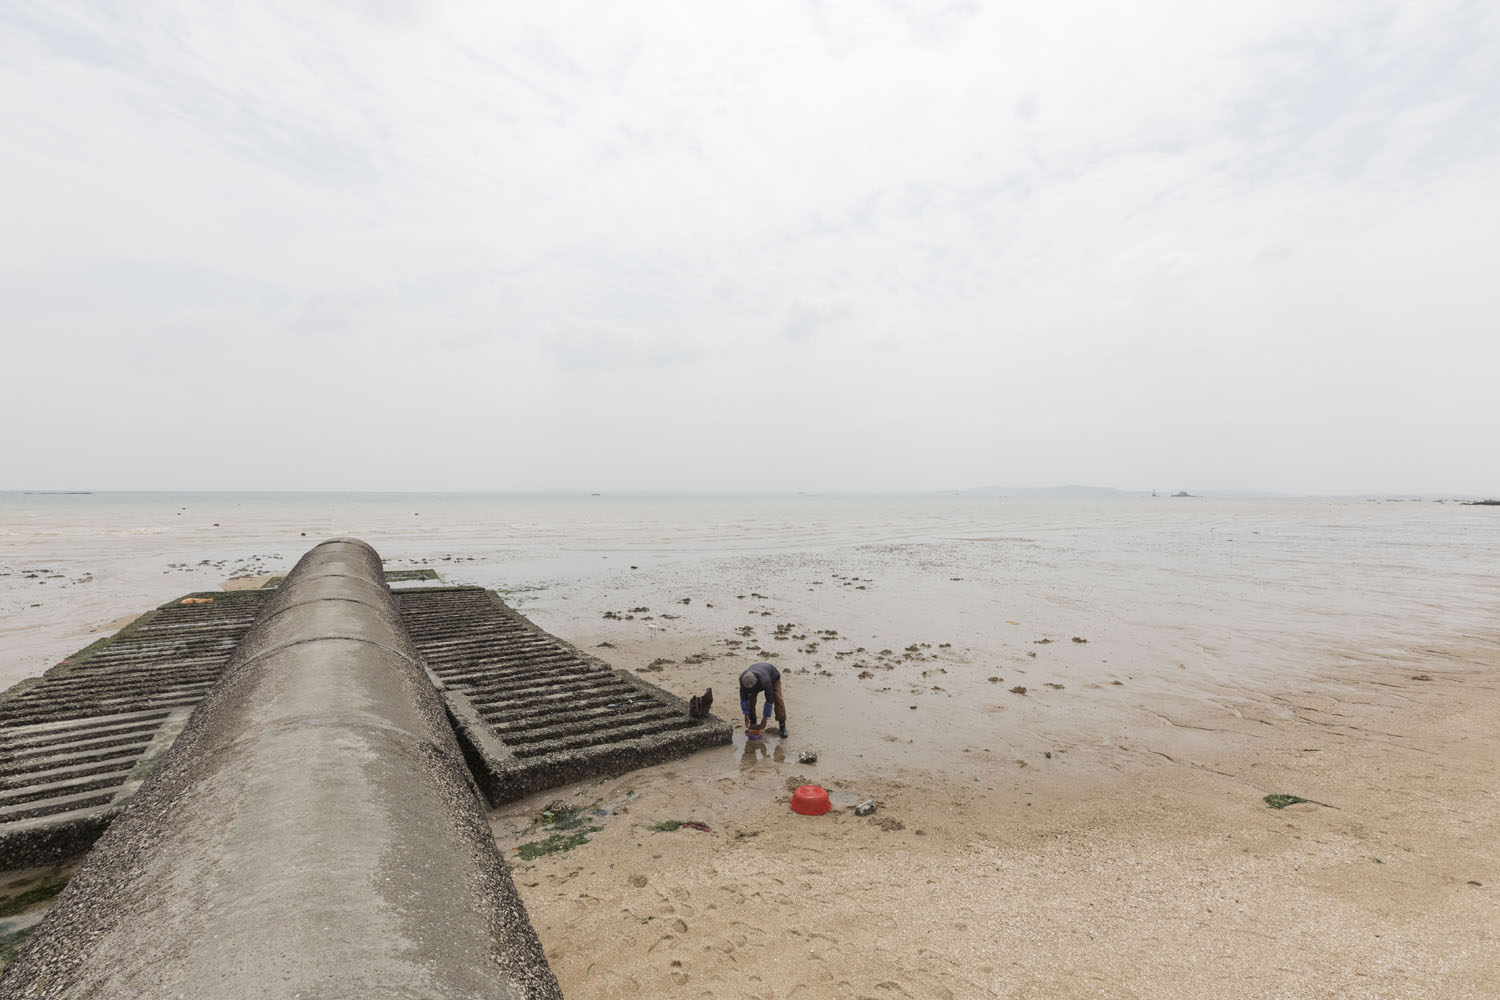 Man sifts through sand searching for shellfish at Guanyinshan Fantasy Beach. Xiamen, China. 2018.